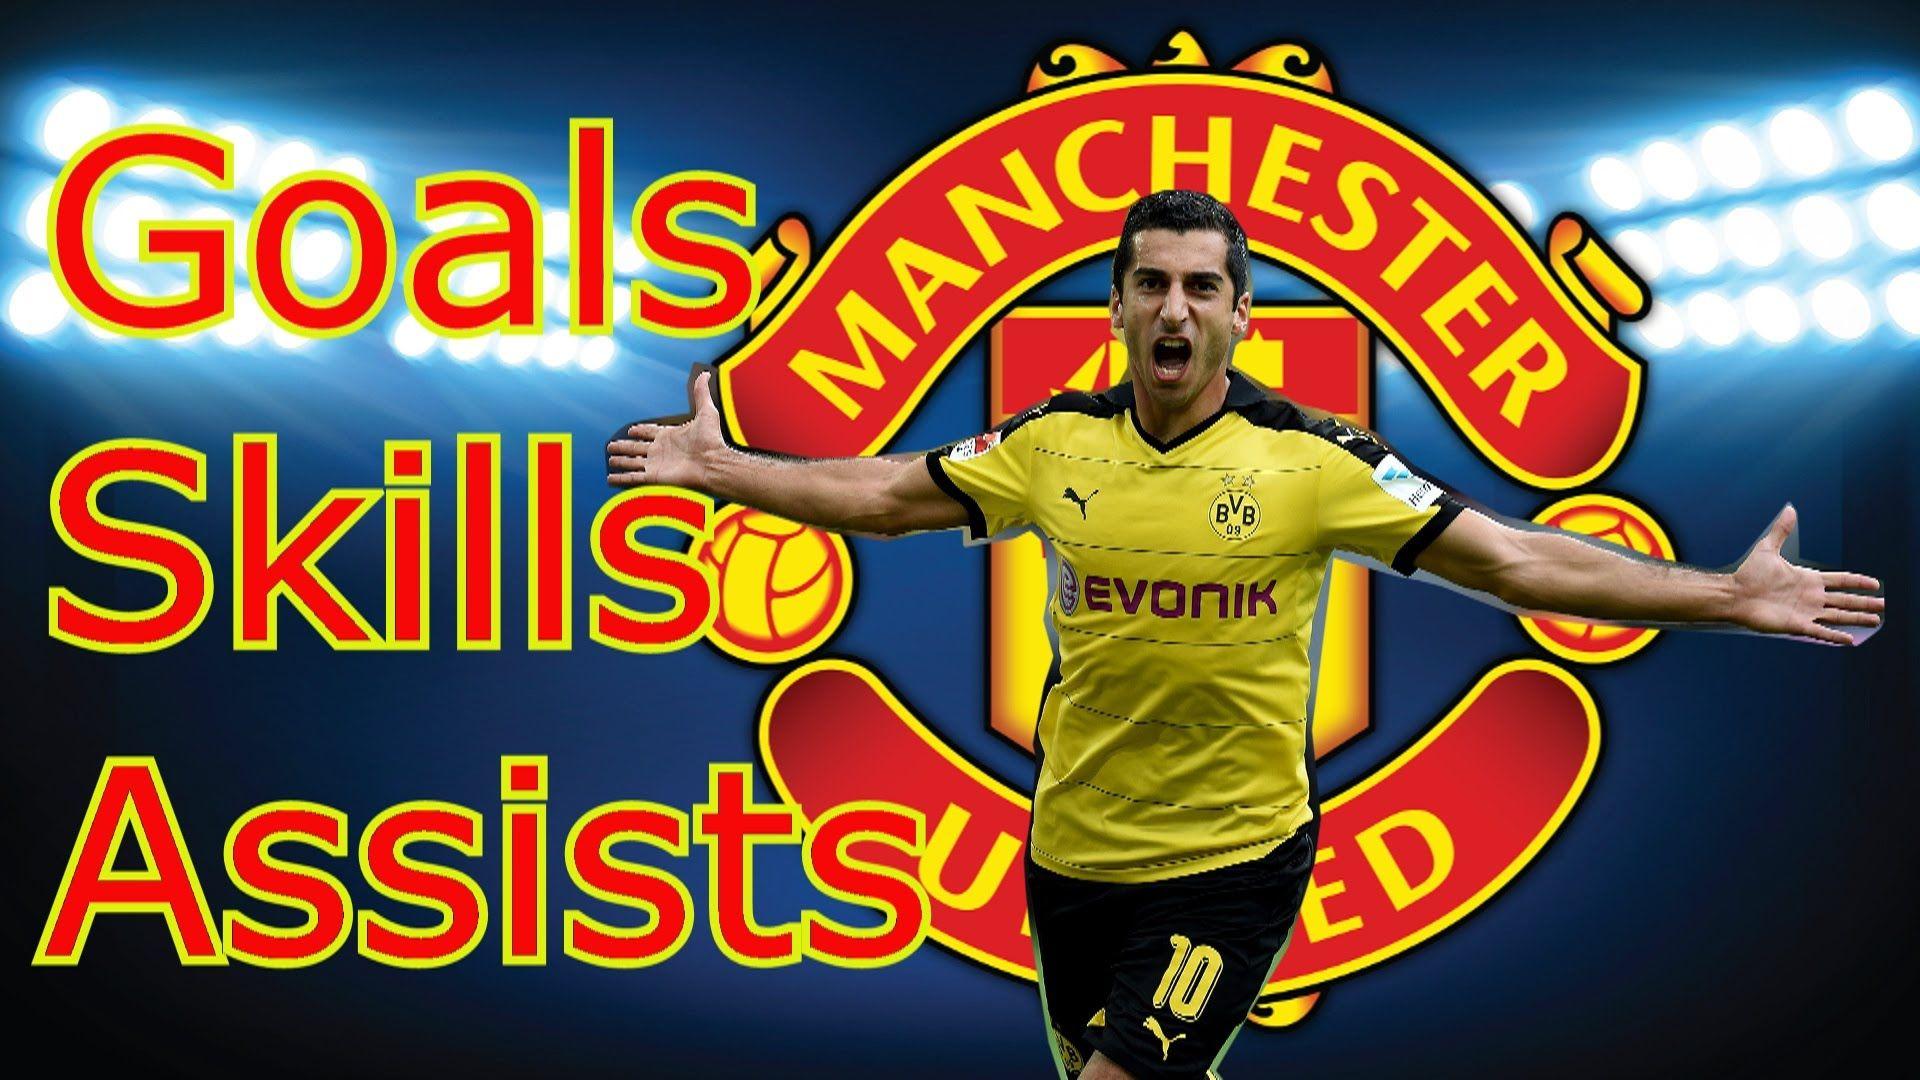 Welcome Henrikh Mkhitaryan to Manchester United. ●Goals●Skills